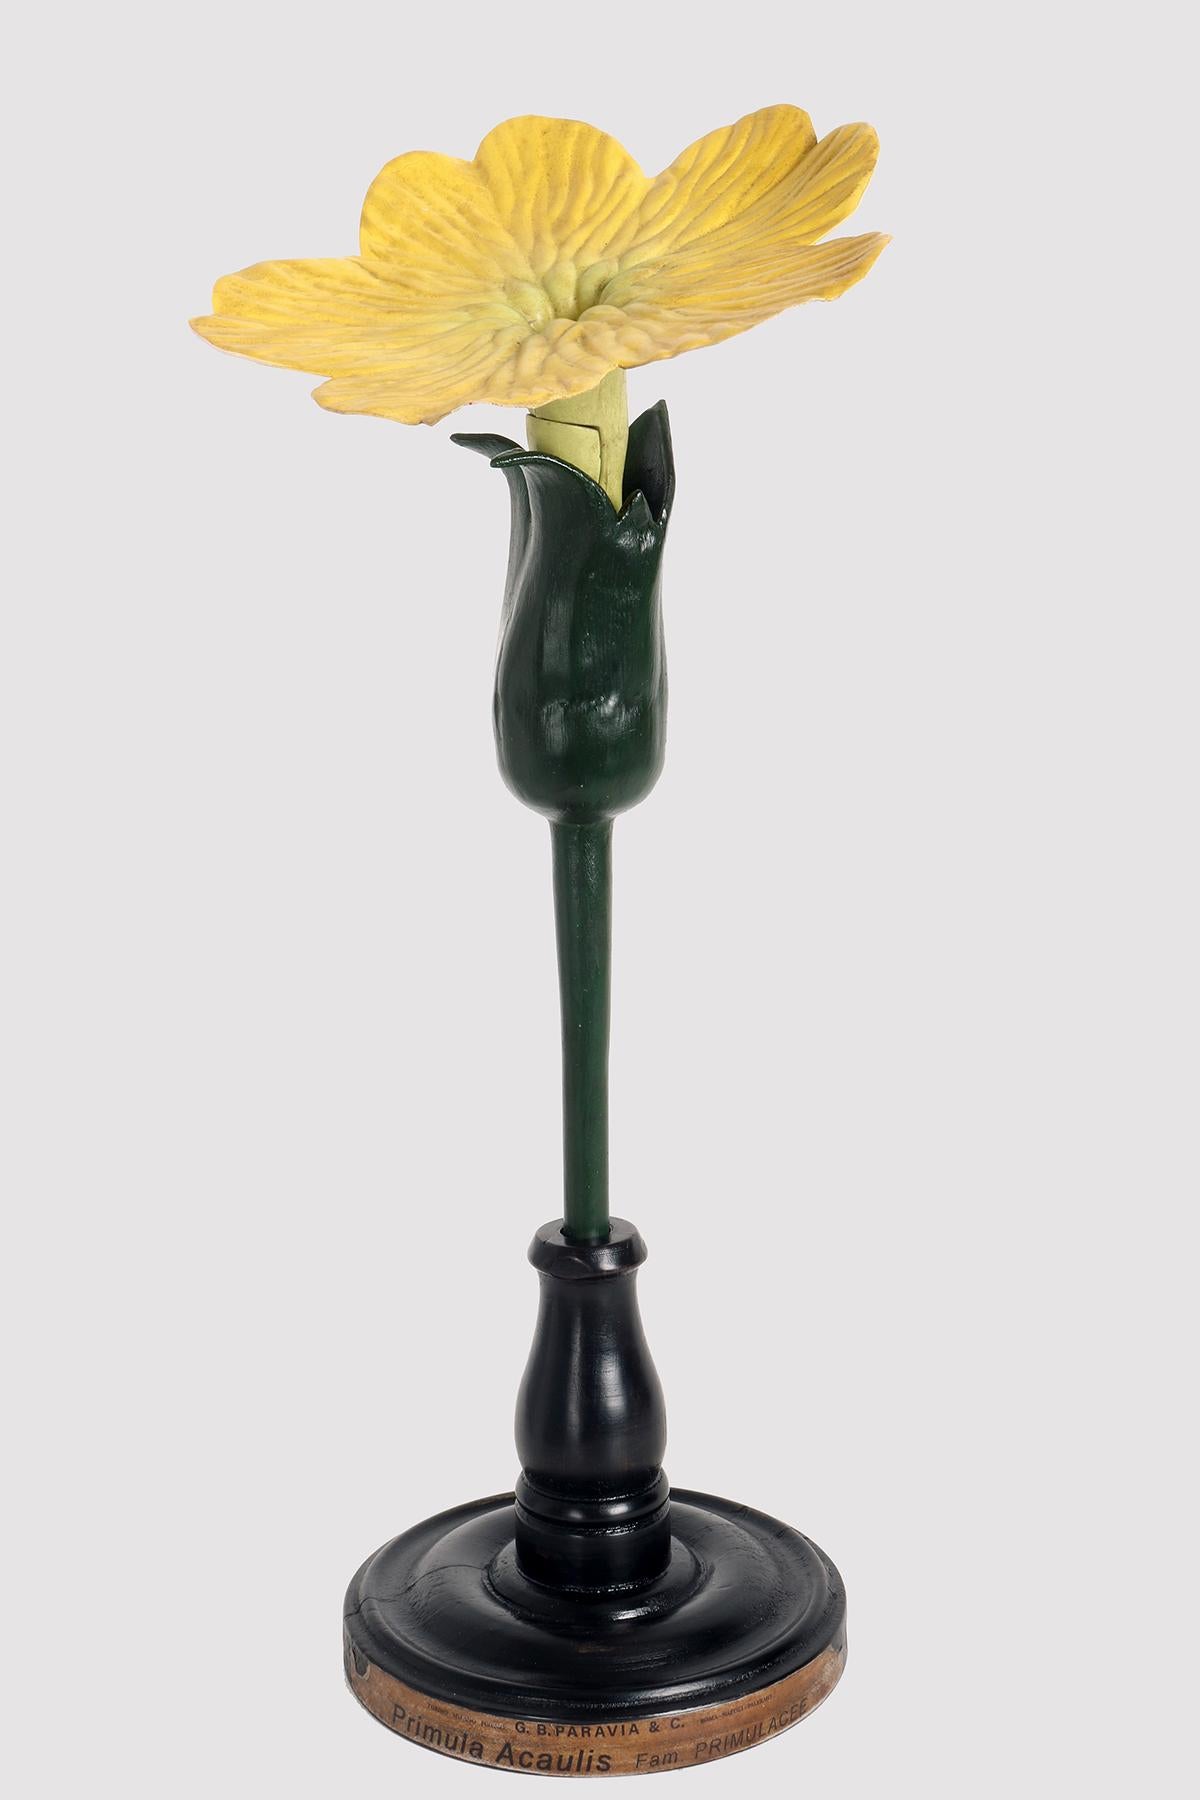 Maquette botanique à usage didactique, représentant une fleur de primevère, Acaulis, Primulaceae. Réalisé en métal, papier, plâtre, galalithe et bois. Extrêmement détaillé. Paravia, Milan, Italie, vers 1940.